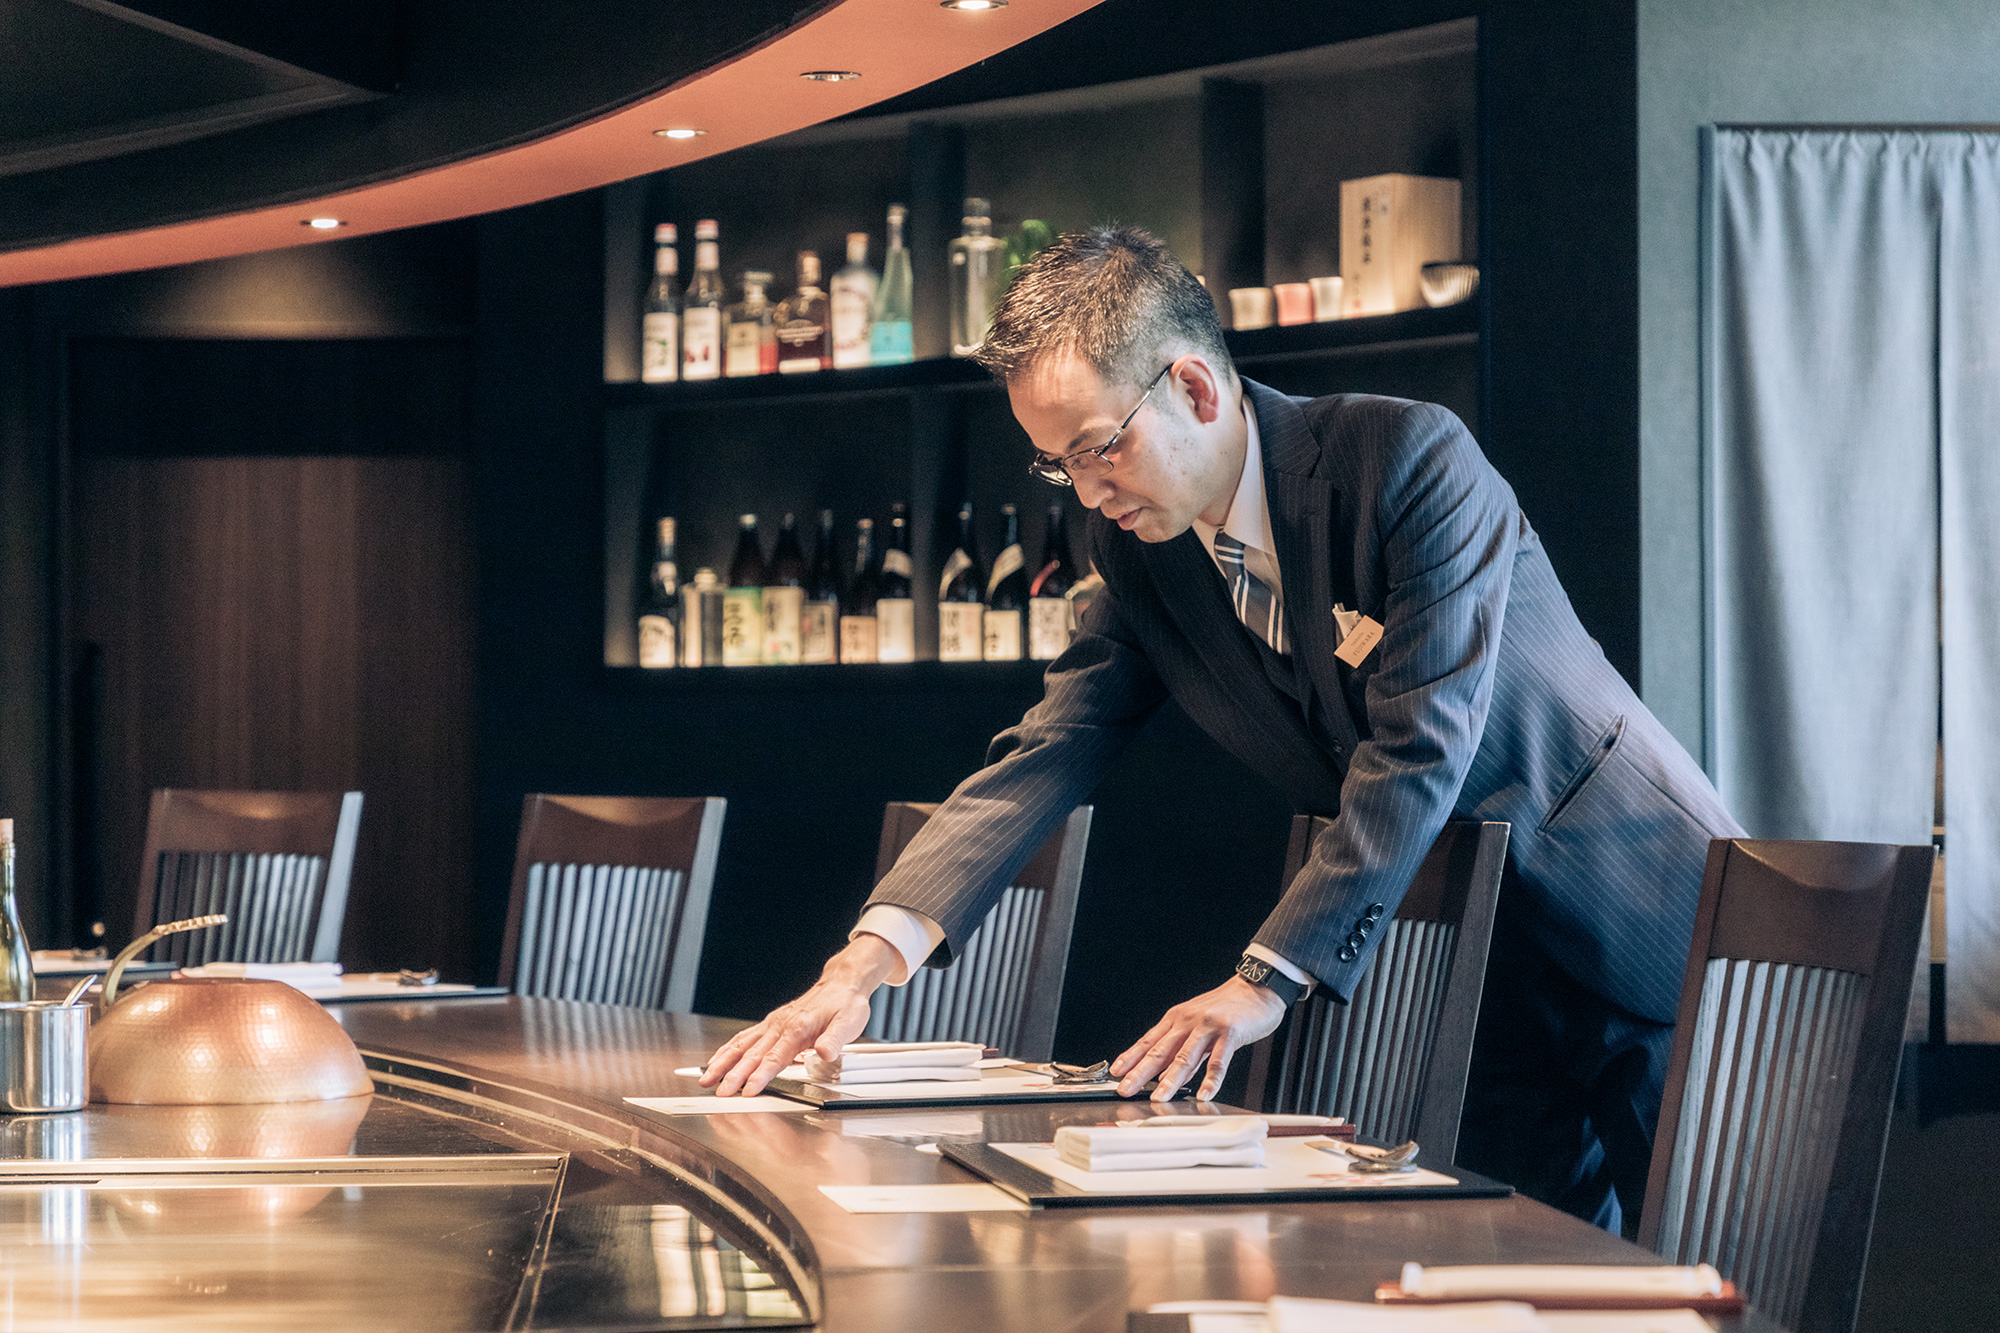 「ホテルテラスタ」ではレストラン「鉄板焼 都雅」の責任者として勤務。お客様一人ひとりに寄り添う温かな接客を心がけている